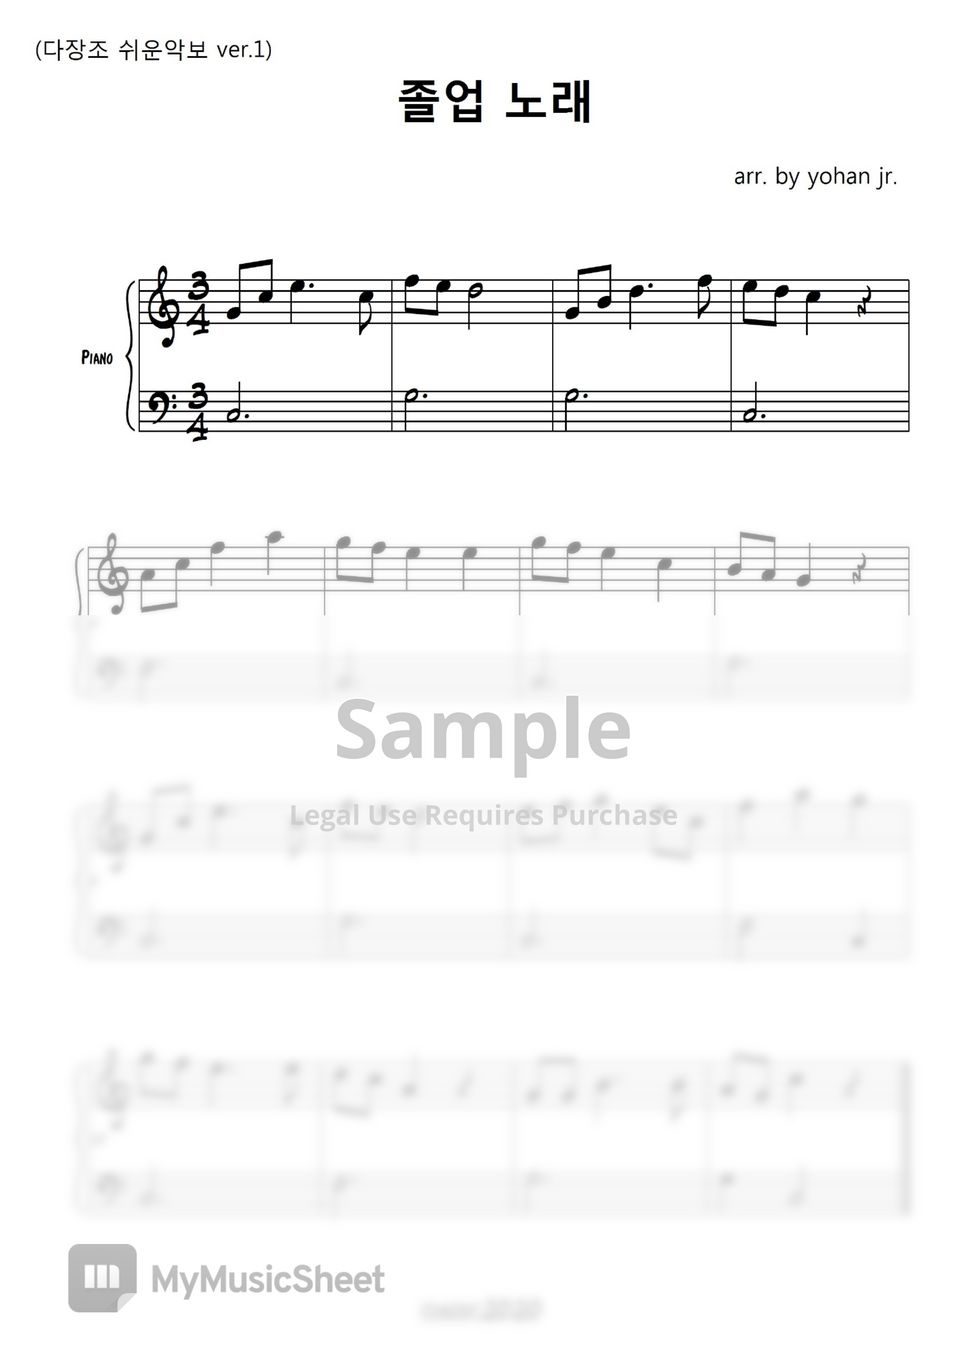 졸업노래 - Graduation Song (easy piano) by classic2020